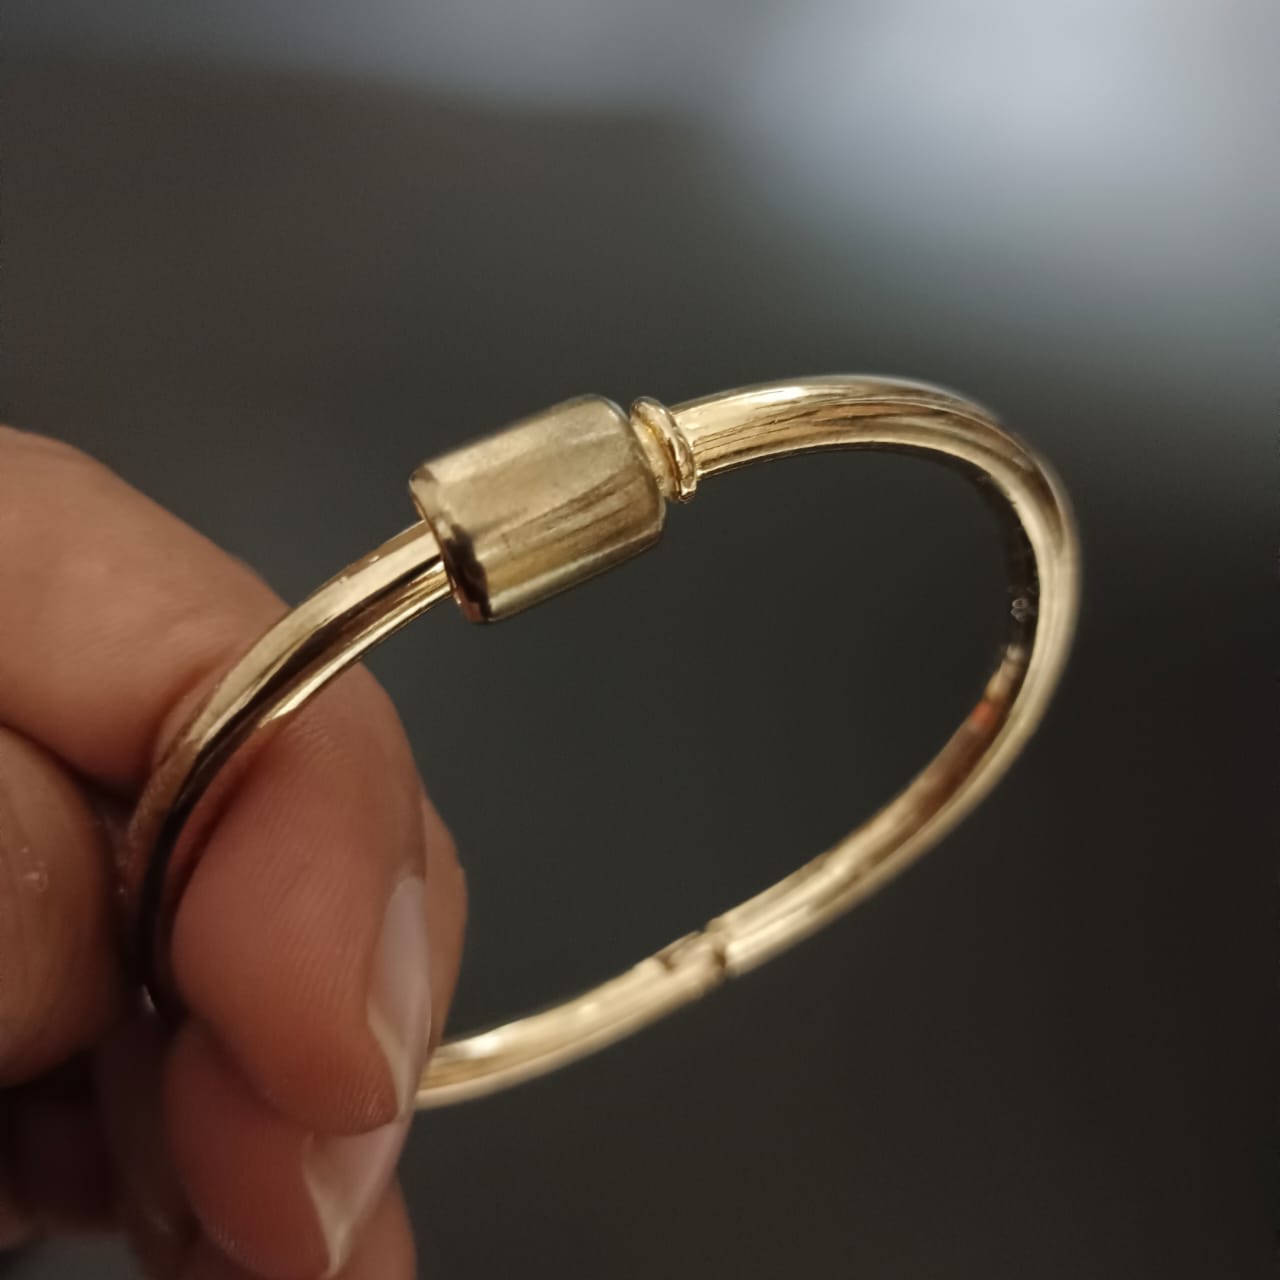 New Golden Design Kada Bracelet For Women and Girl-Jack Marc